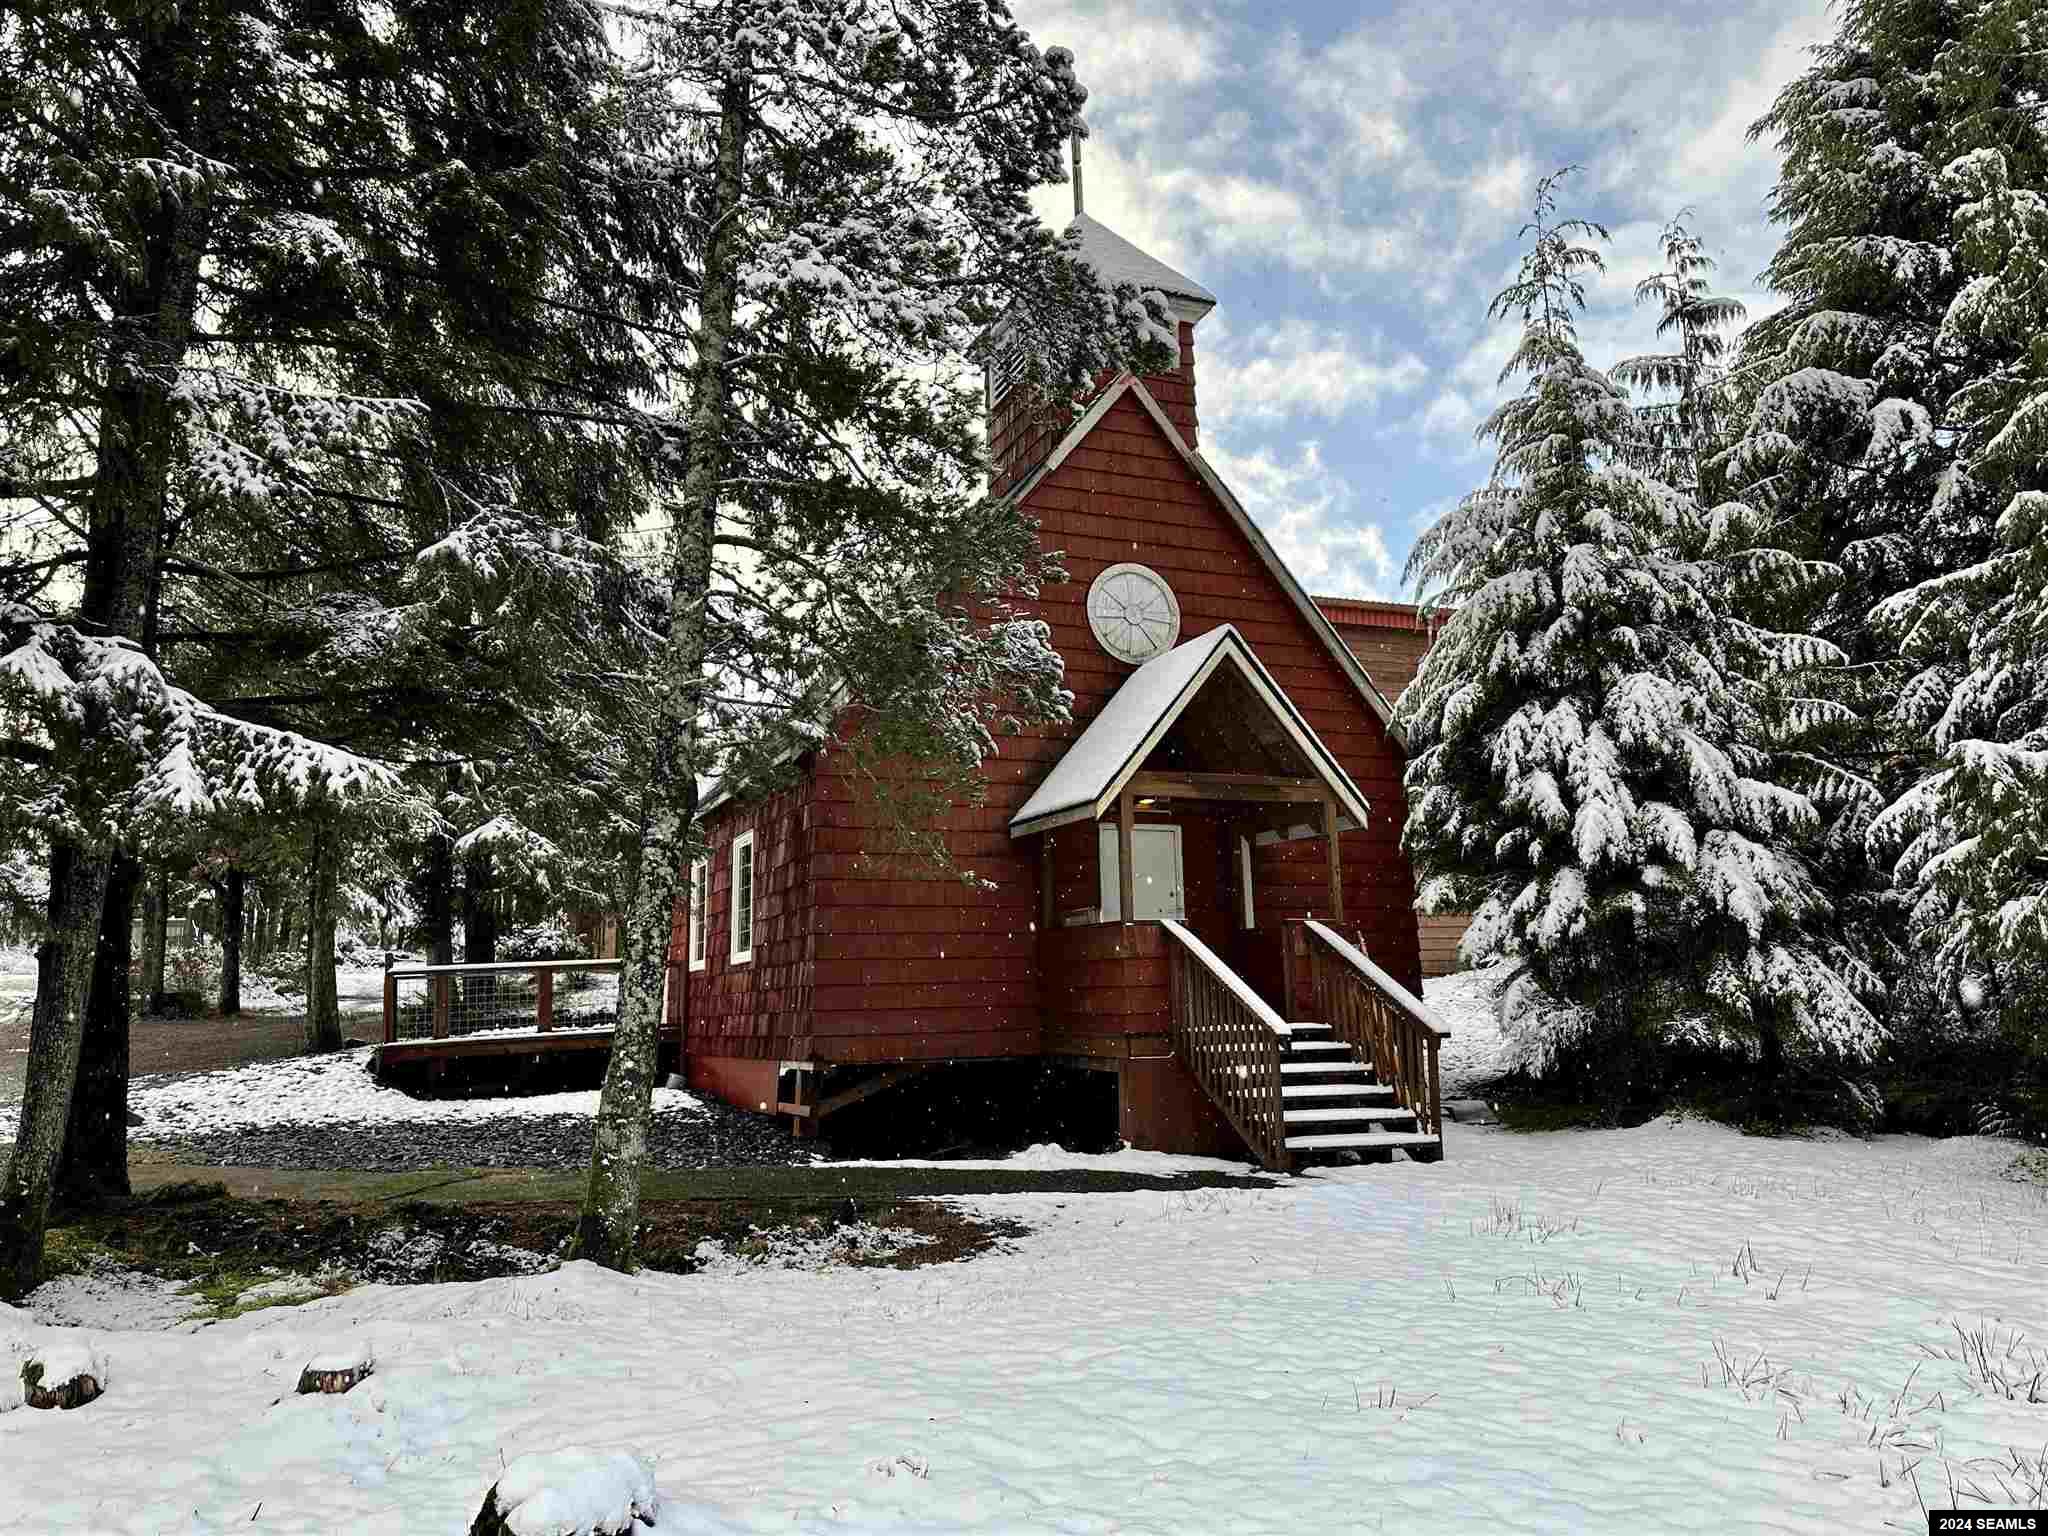 Clover Pass Community Church